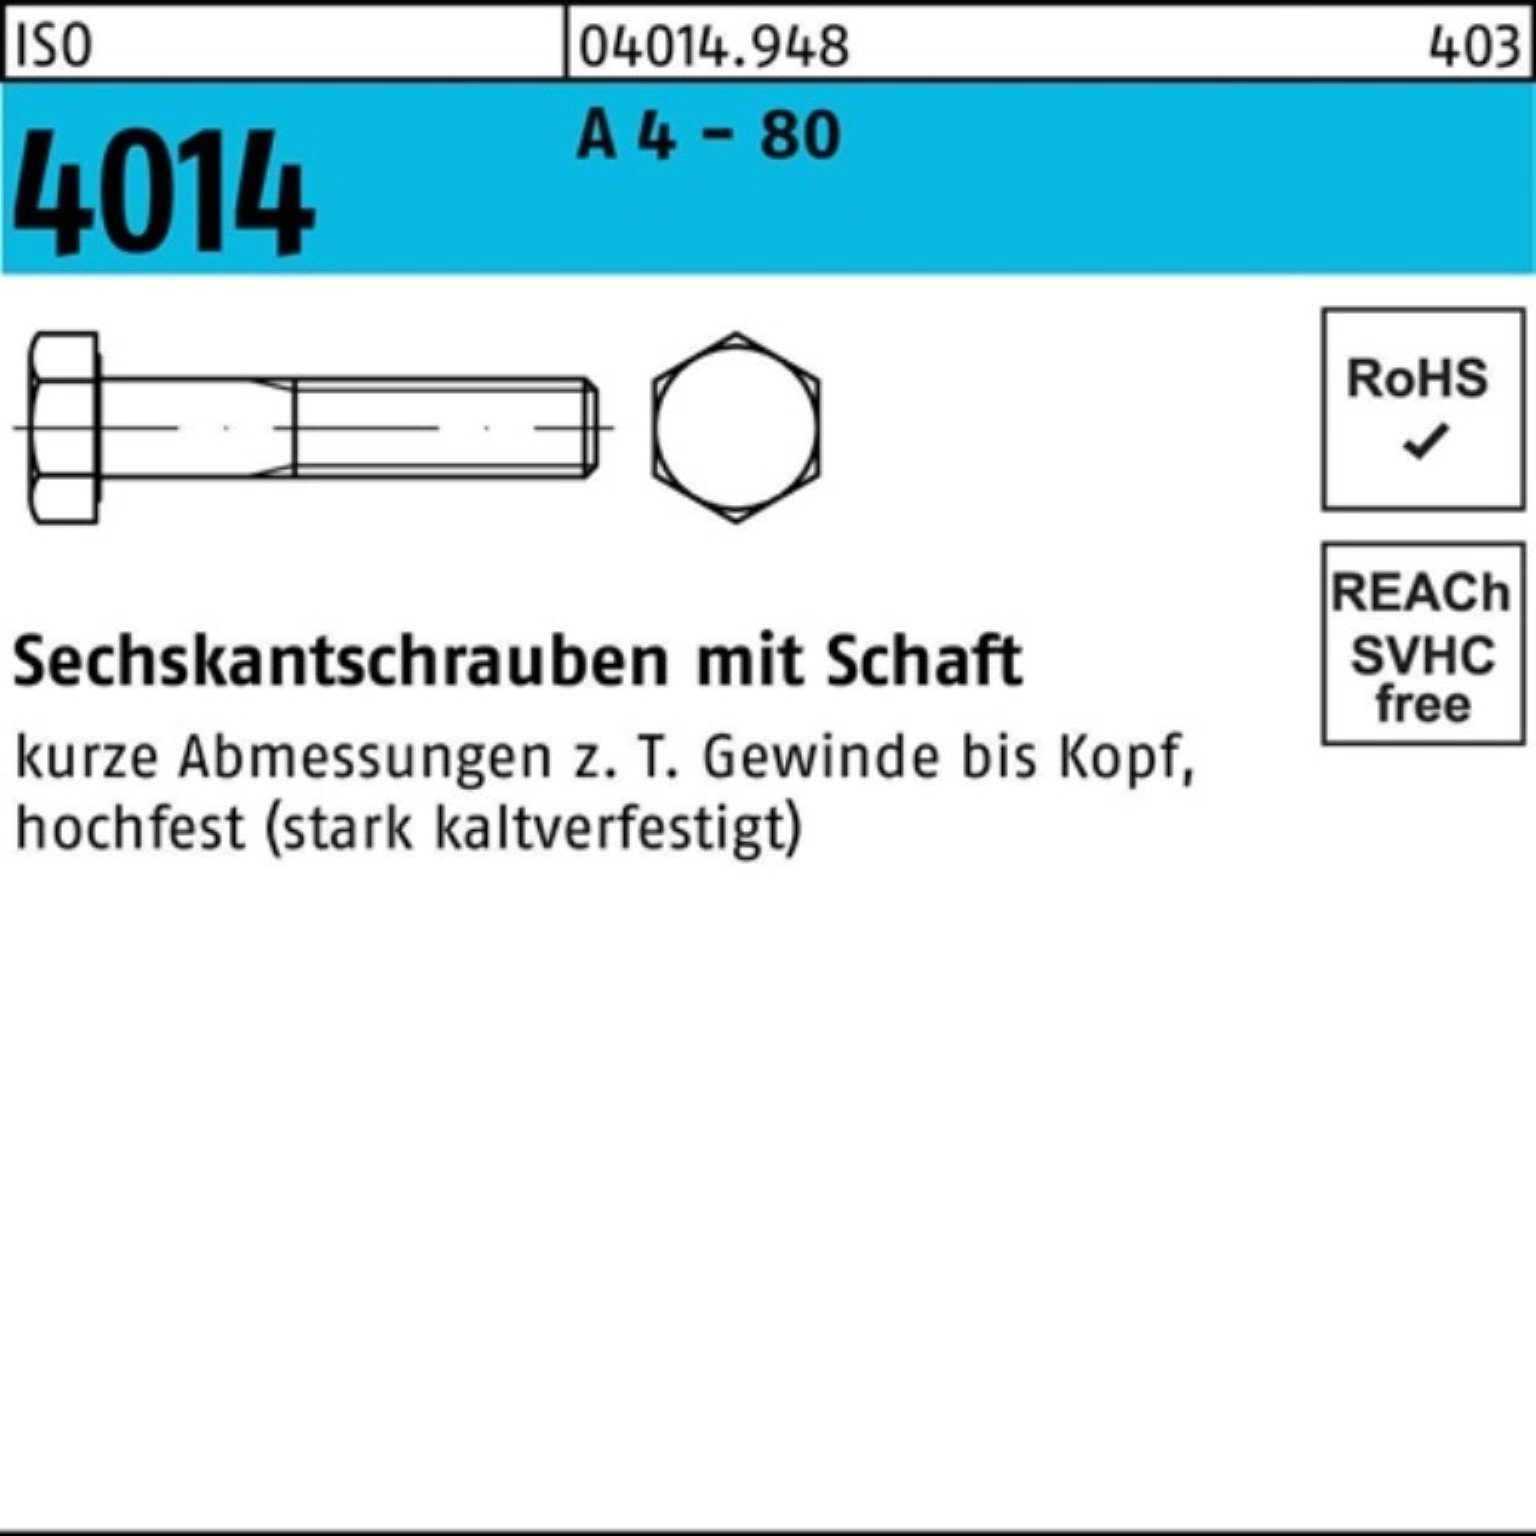 Sechskantschraube - 100 Pack Bufab Stüc 4014 100er 80 A 4 M8x Sechskantschraube 60 Schaft ISO